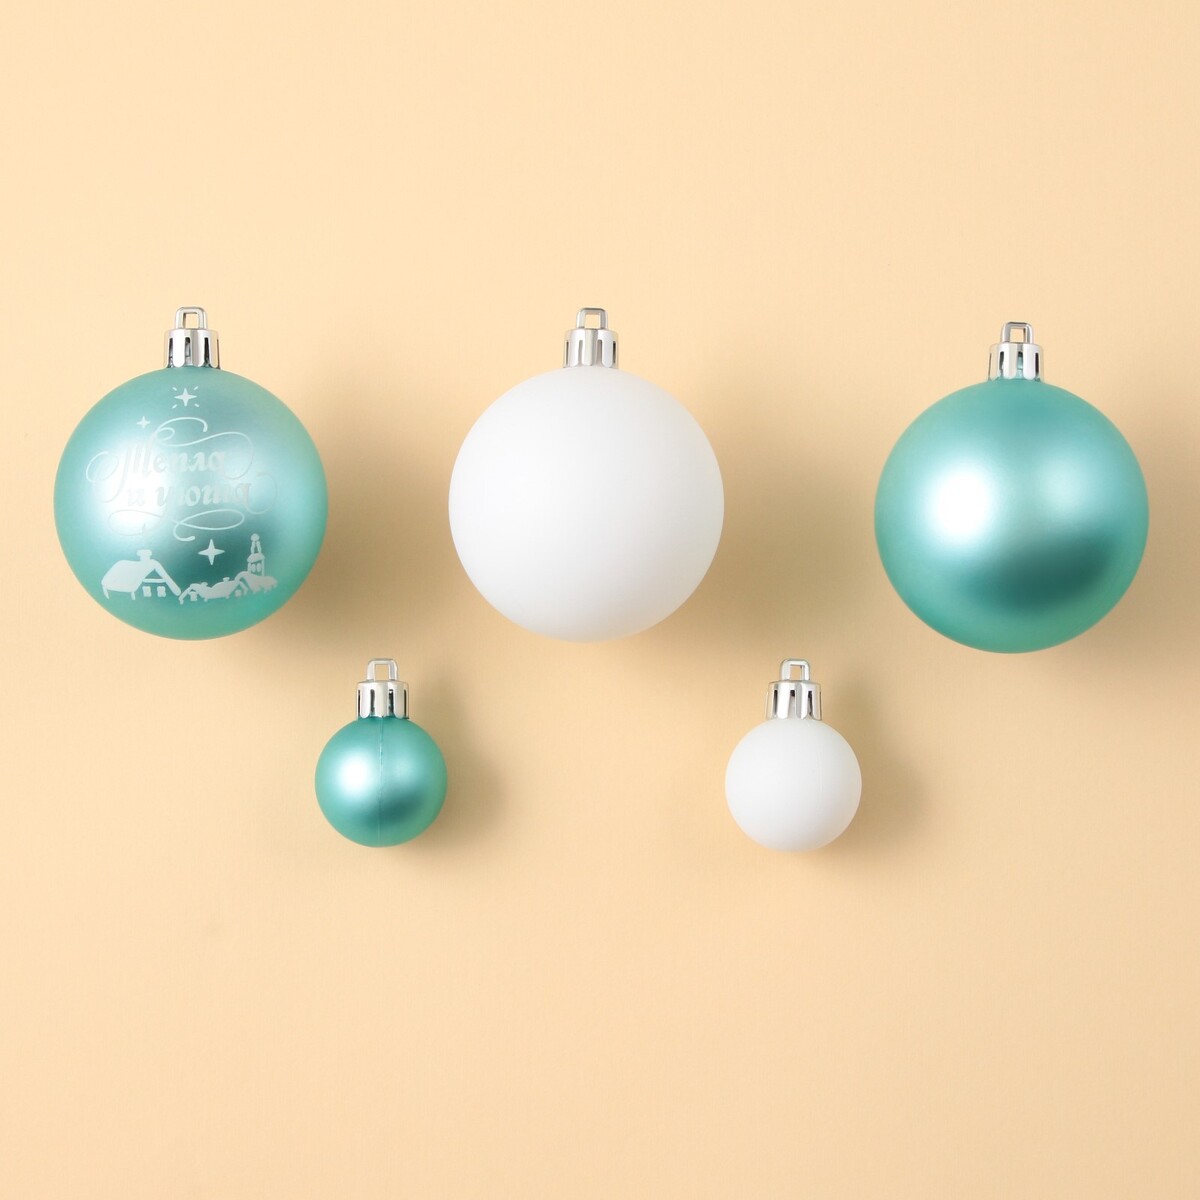 Ёлочные шары новогодние, на новый год, d=3 и d=6, 15 шт., цвет голубой и белый